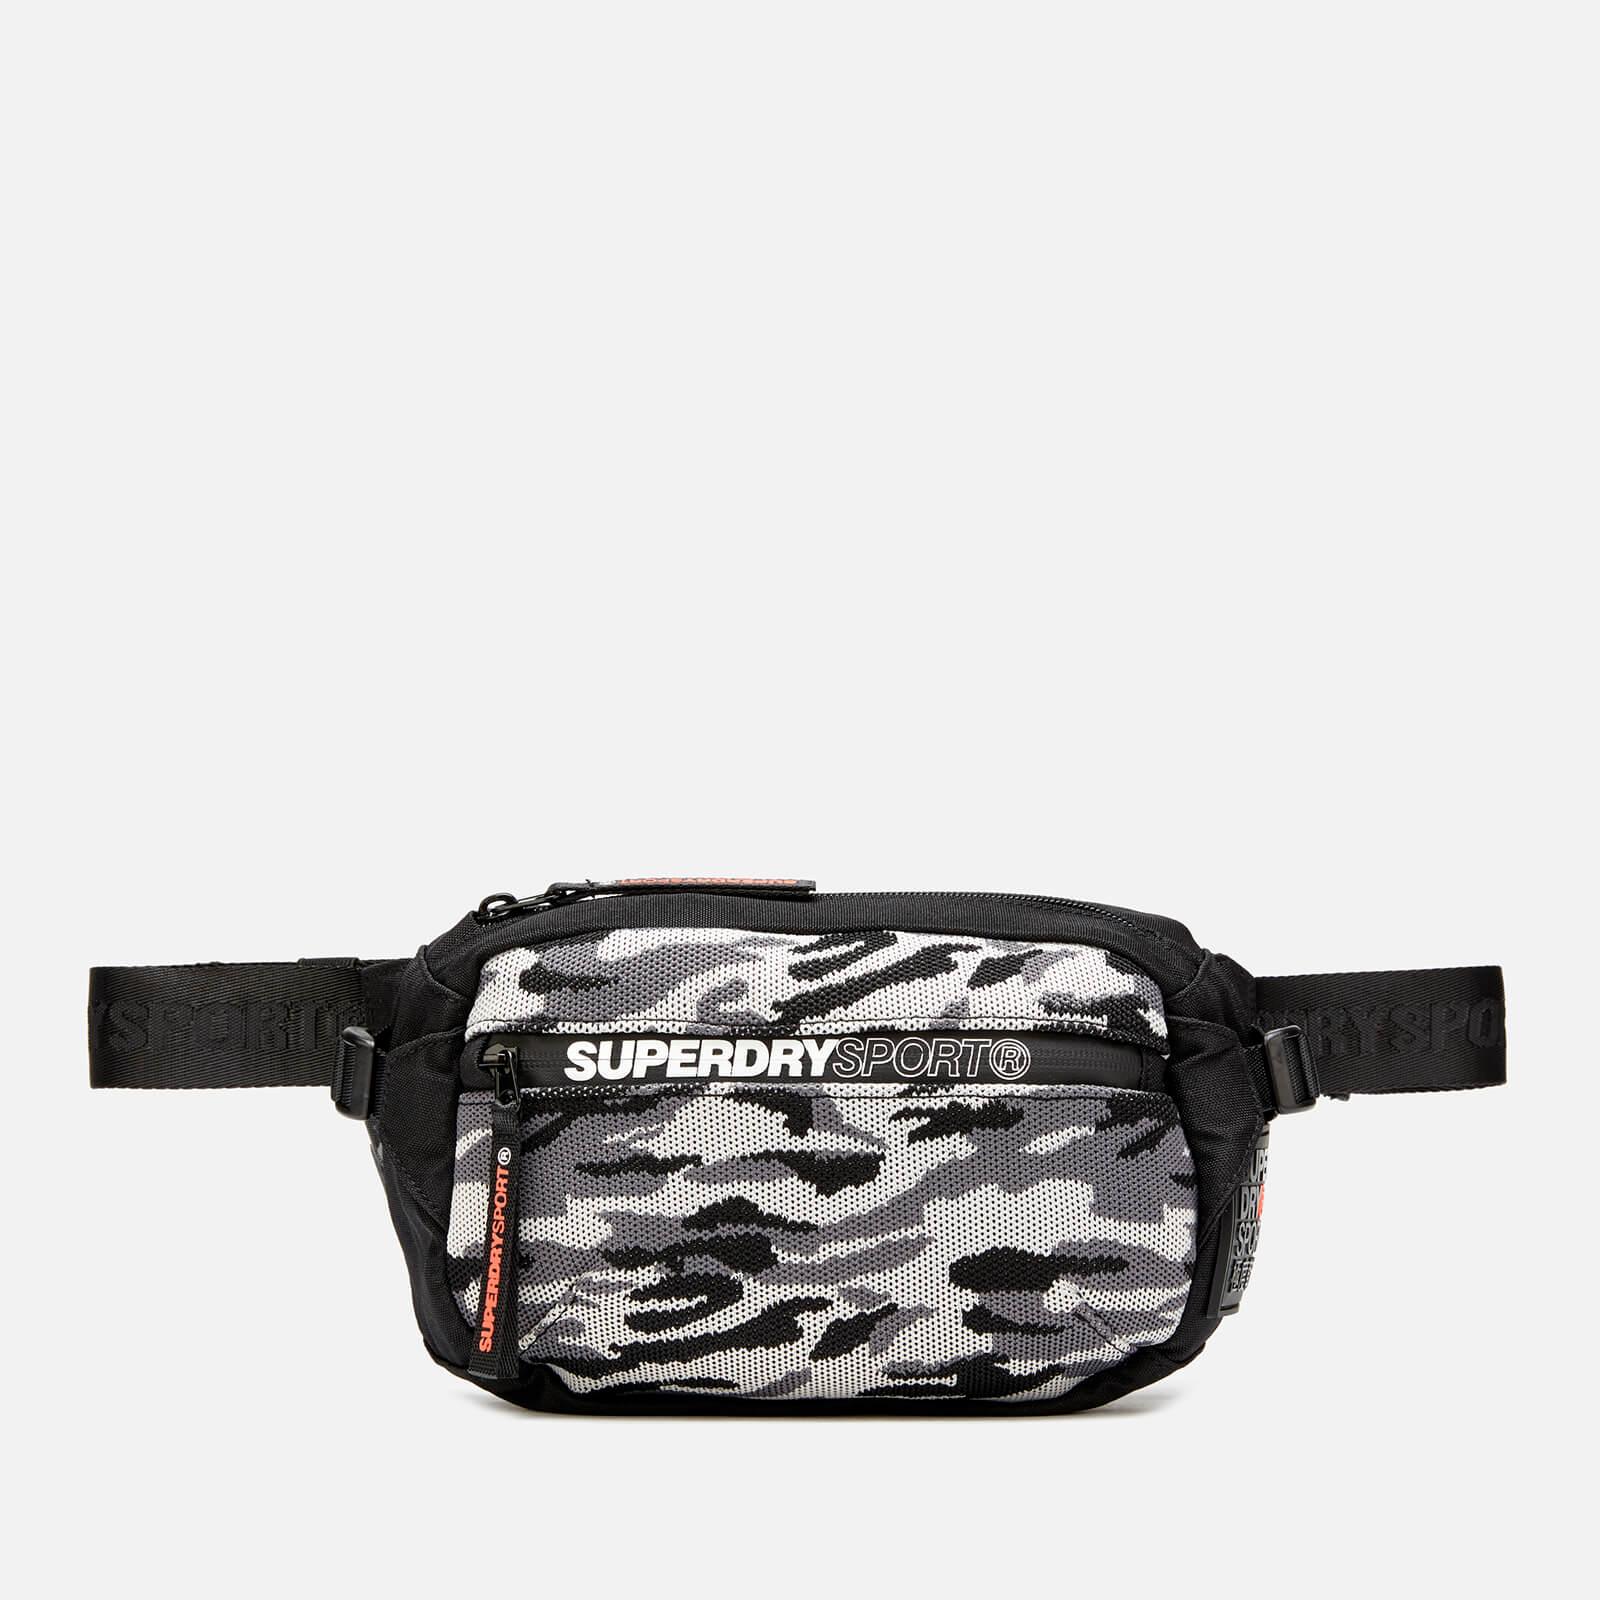 Superdry Sport Bum Bag in Black for Men - Lyst